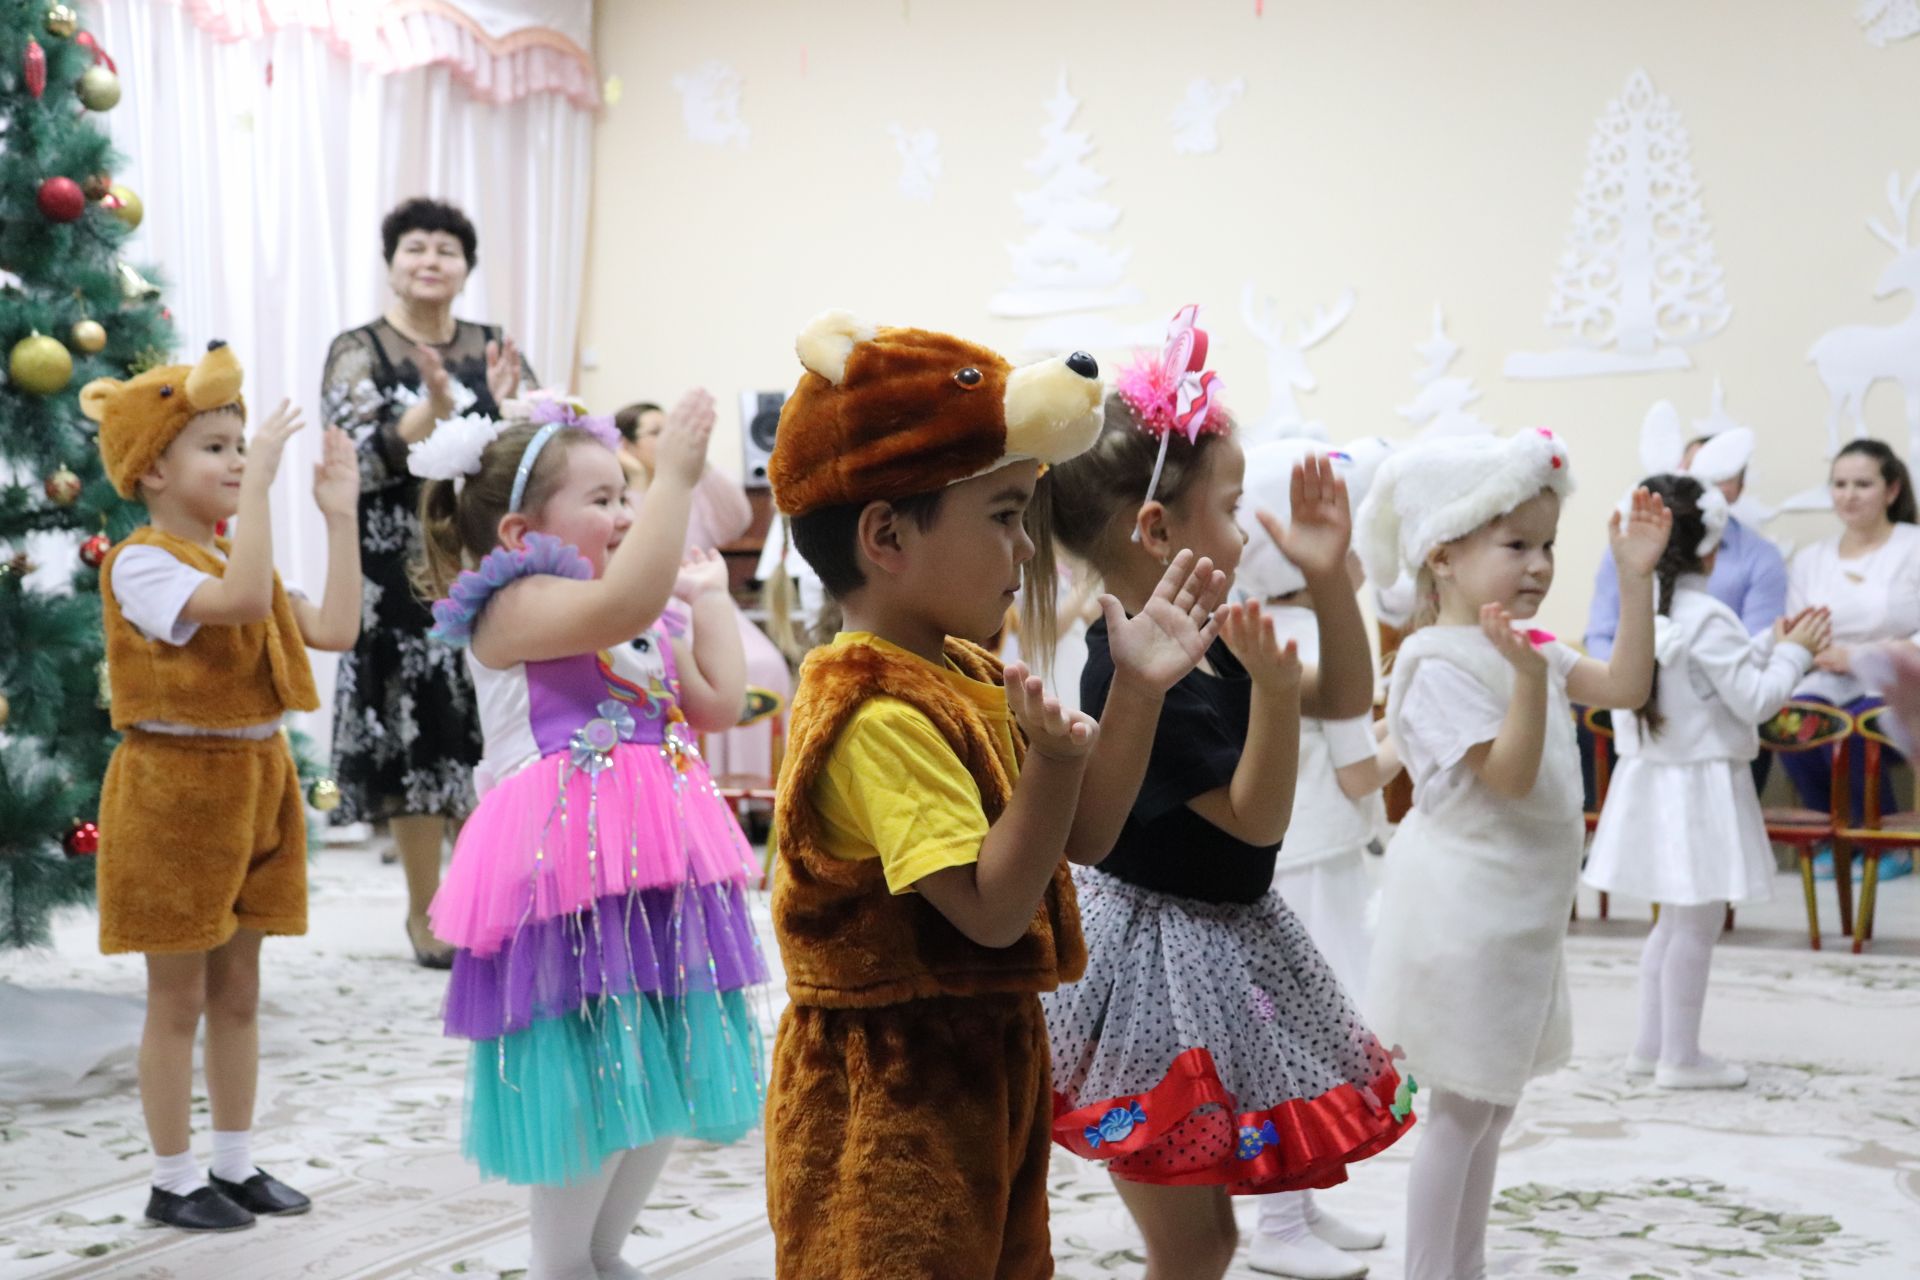 Депутаты подарили азнакаевским детсадам новогодние подарки